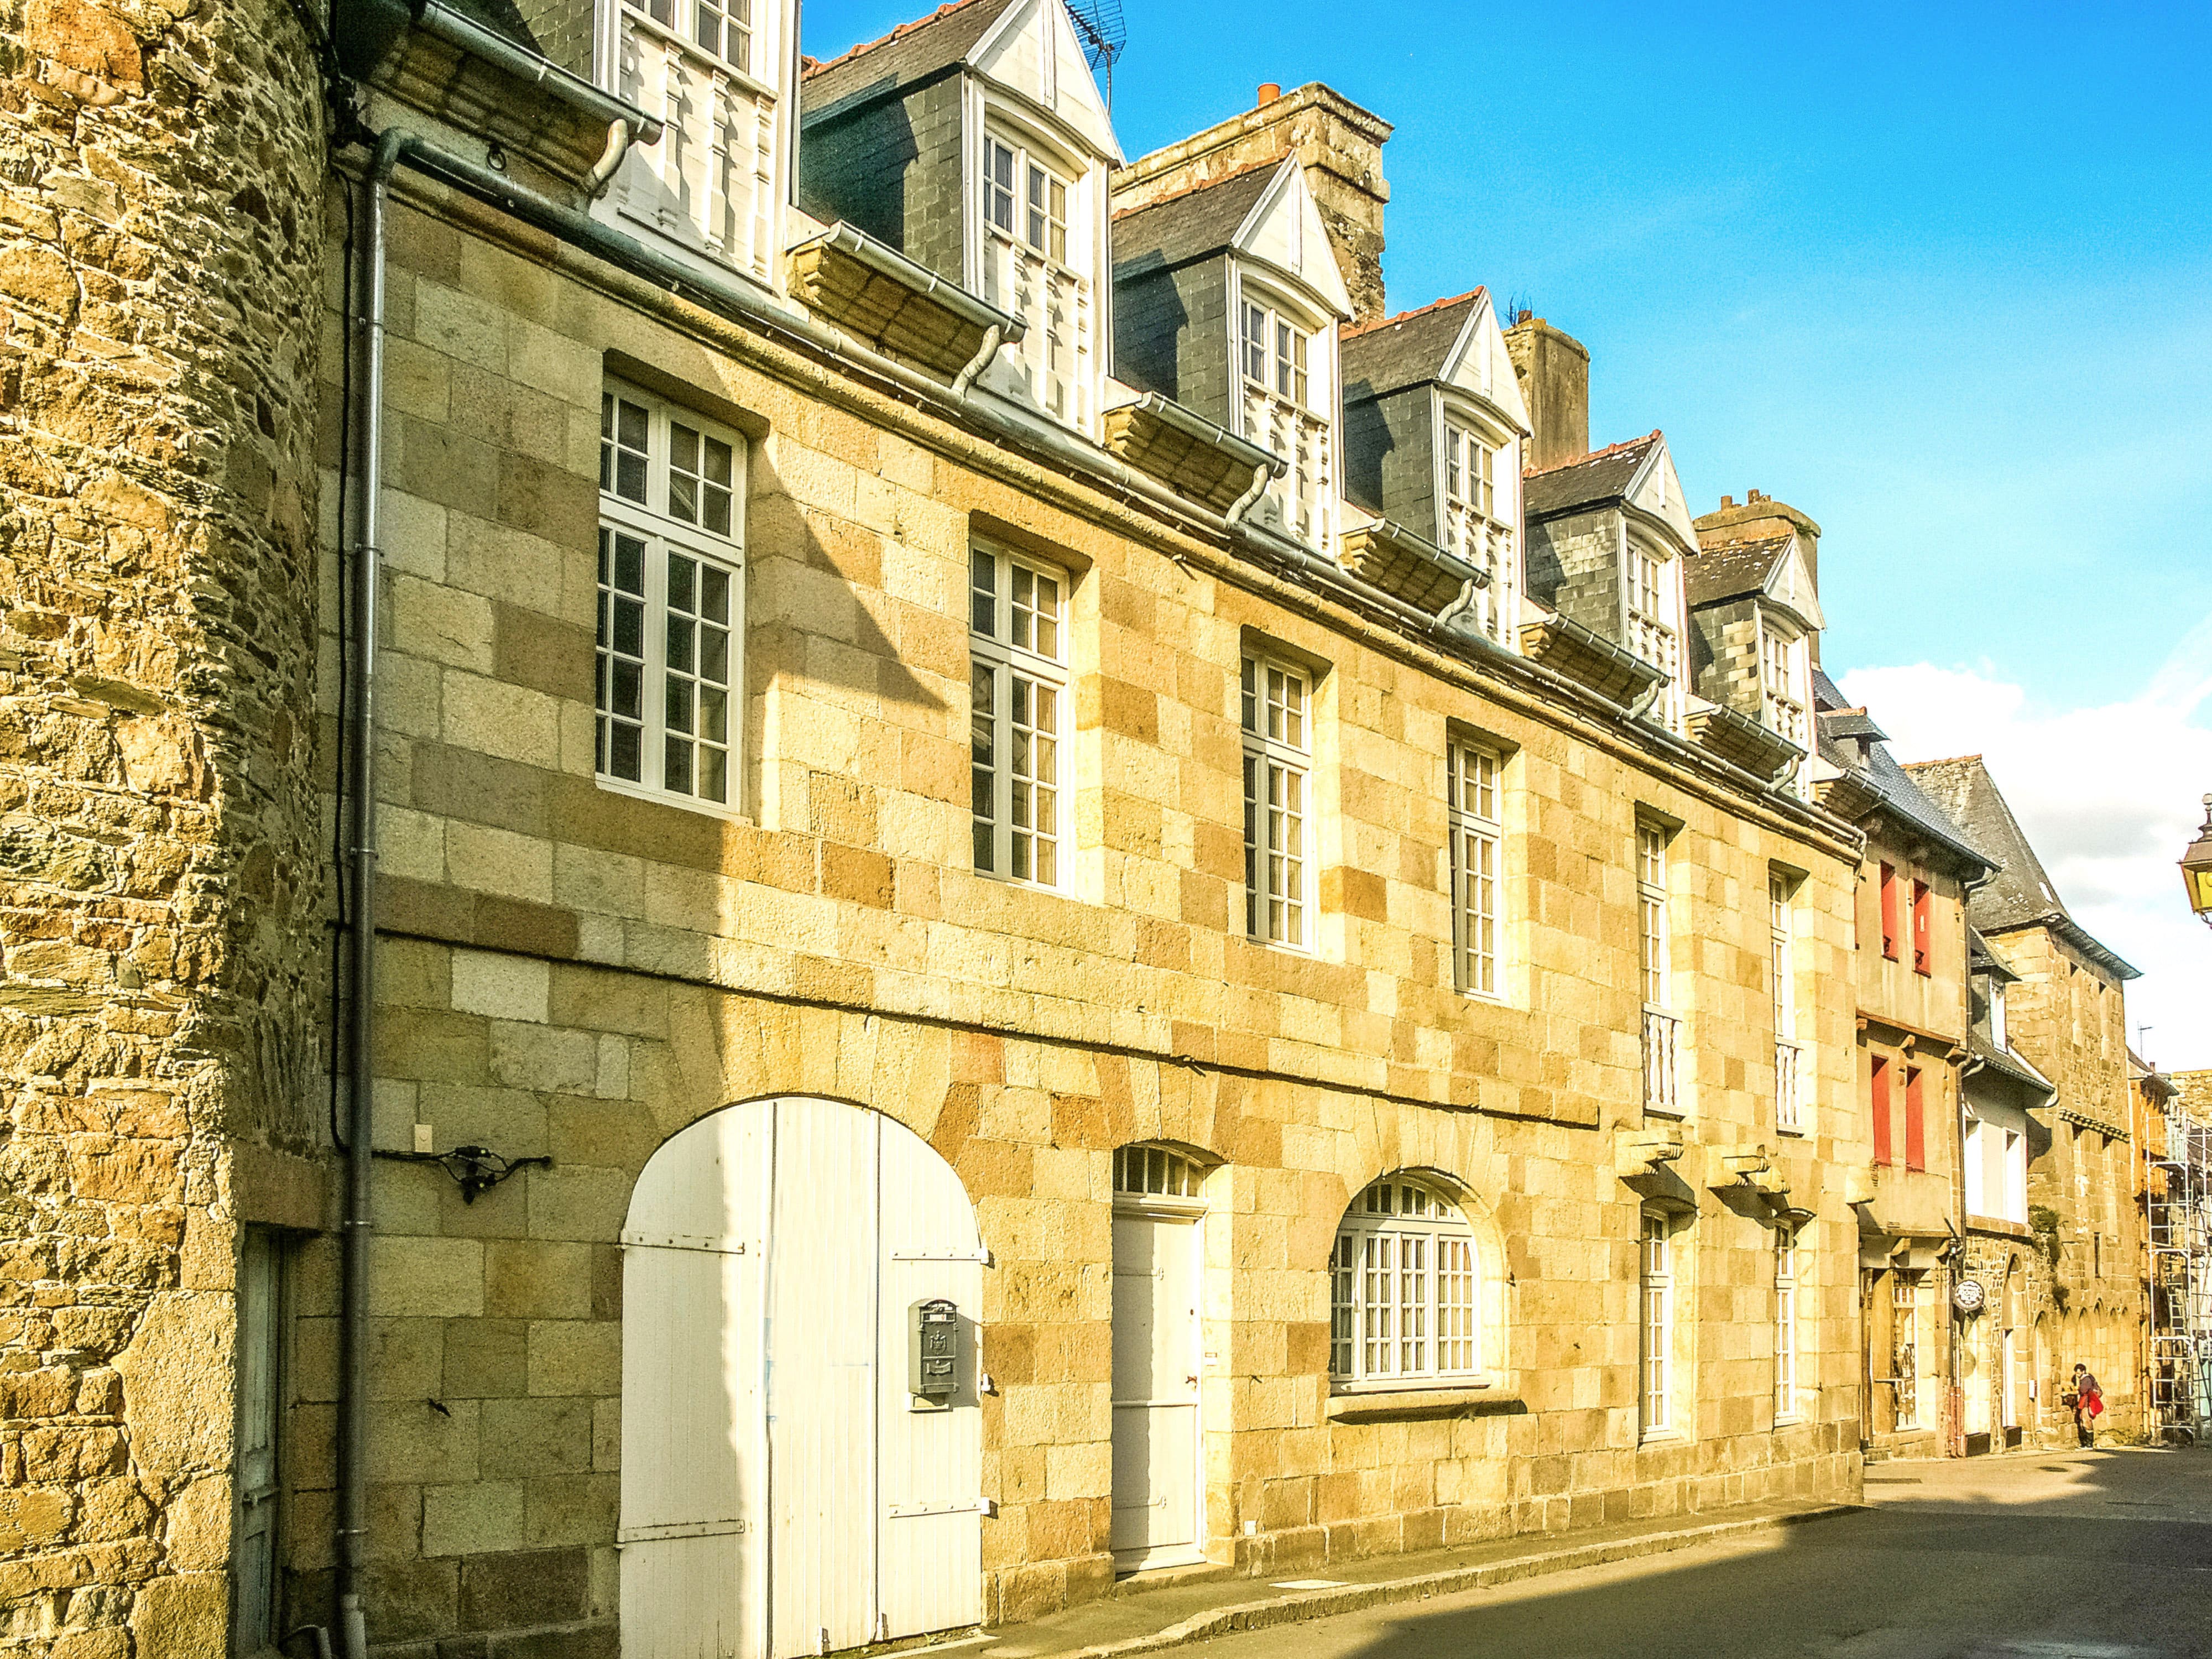 Maison de ville vendue par Leggett Immobilier en Bretagne dans la Côte d'Amor